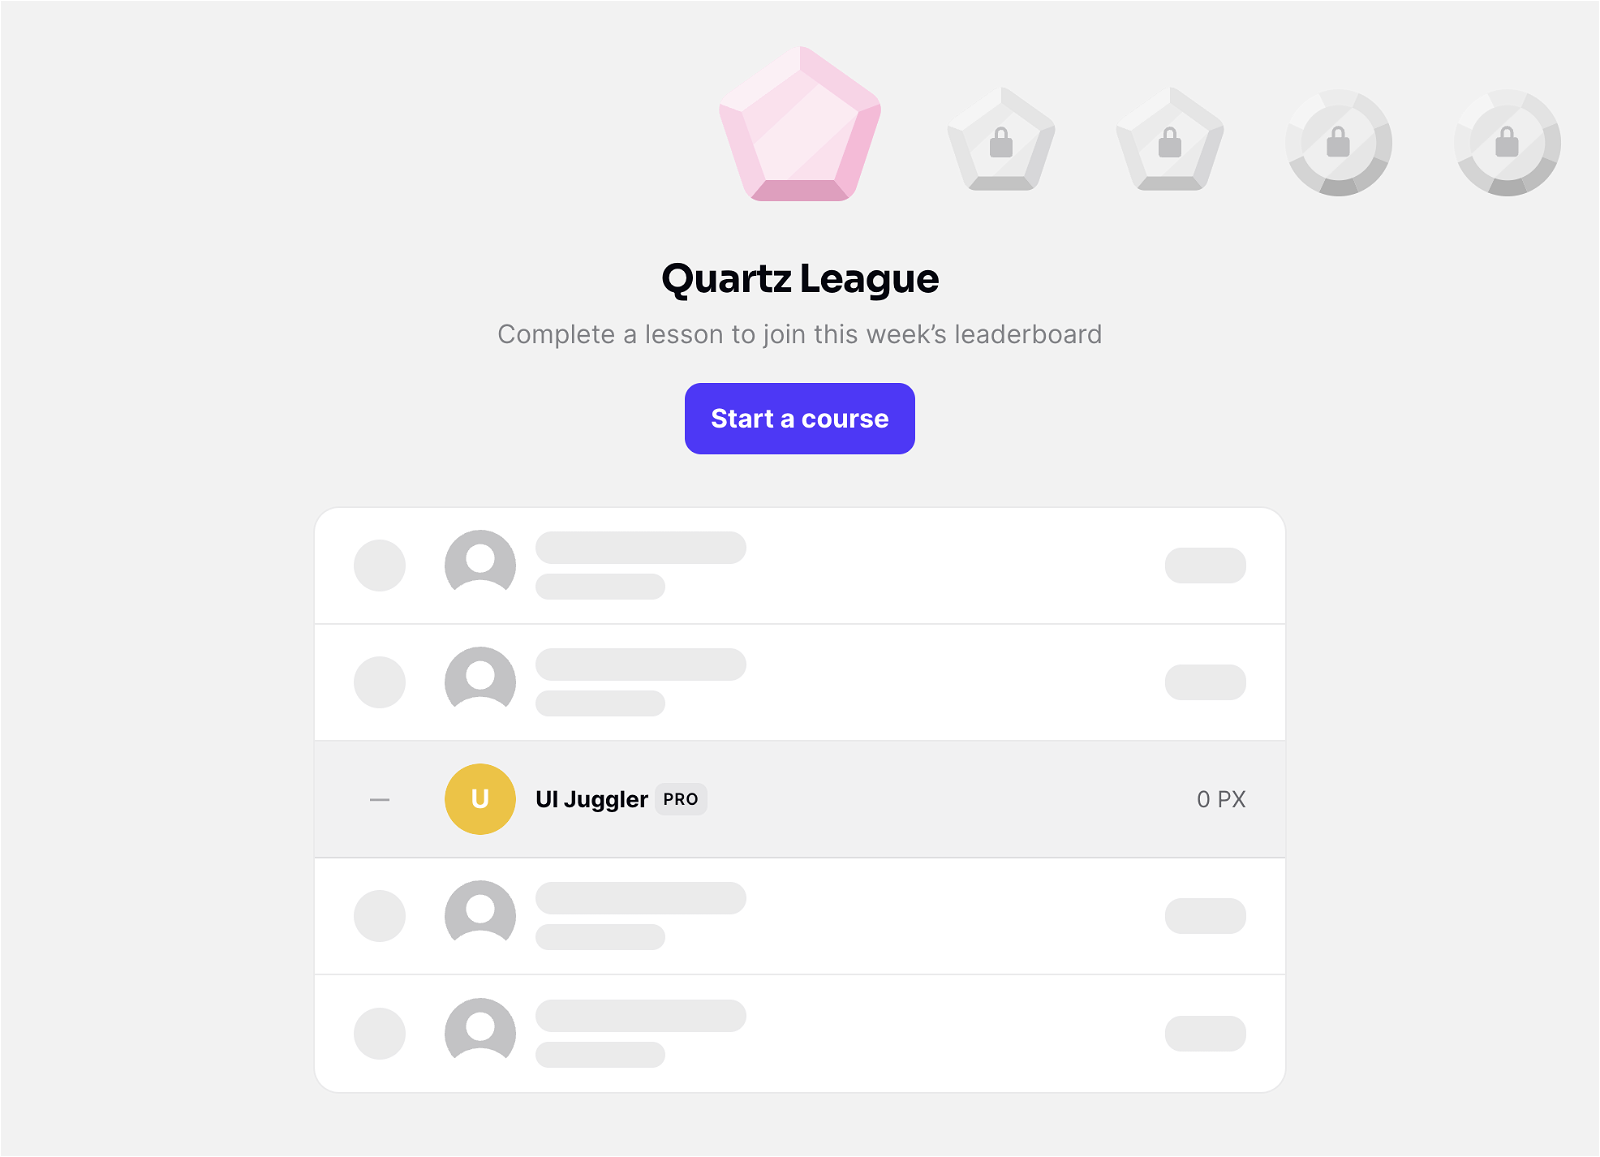 Quartz League